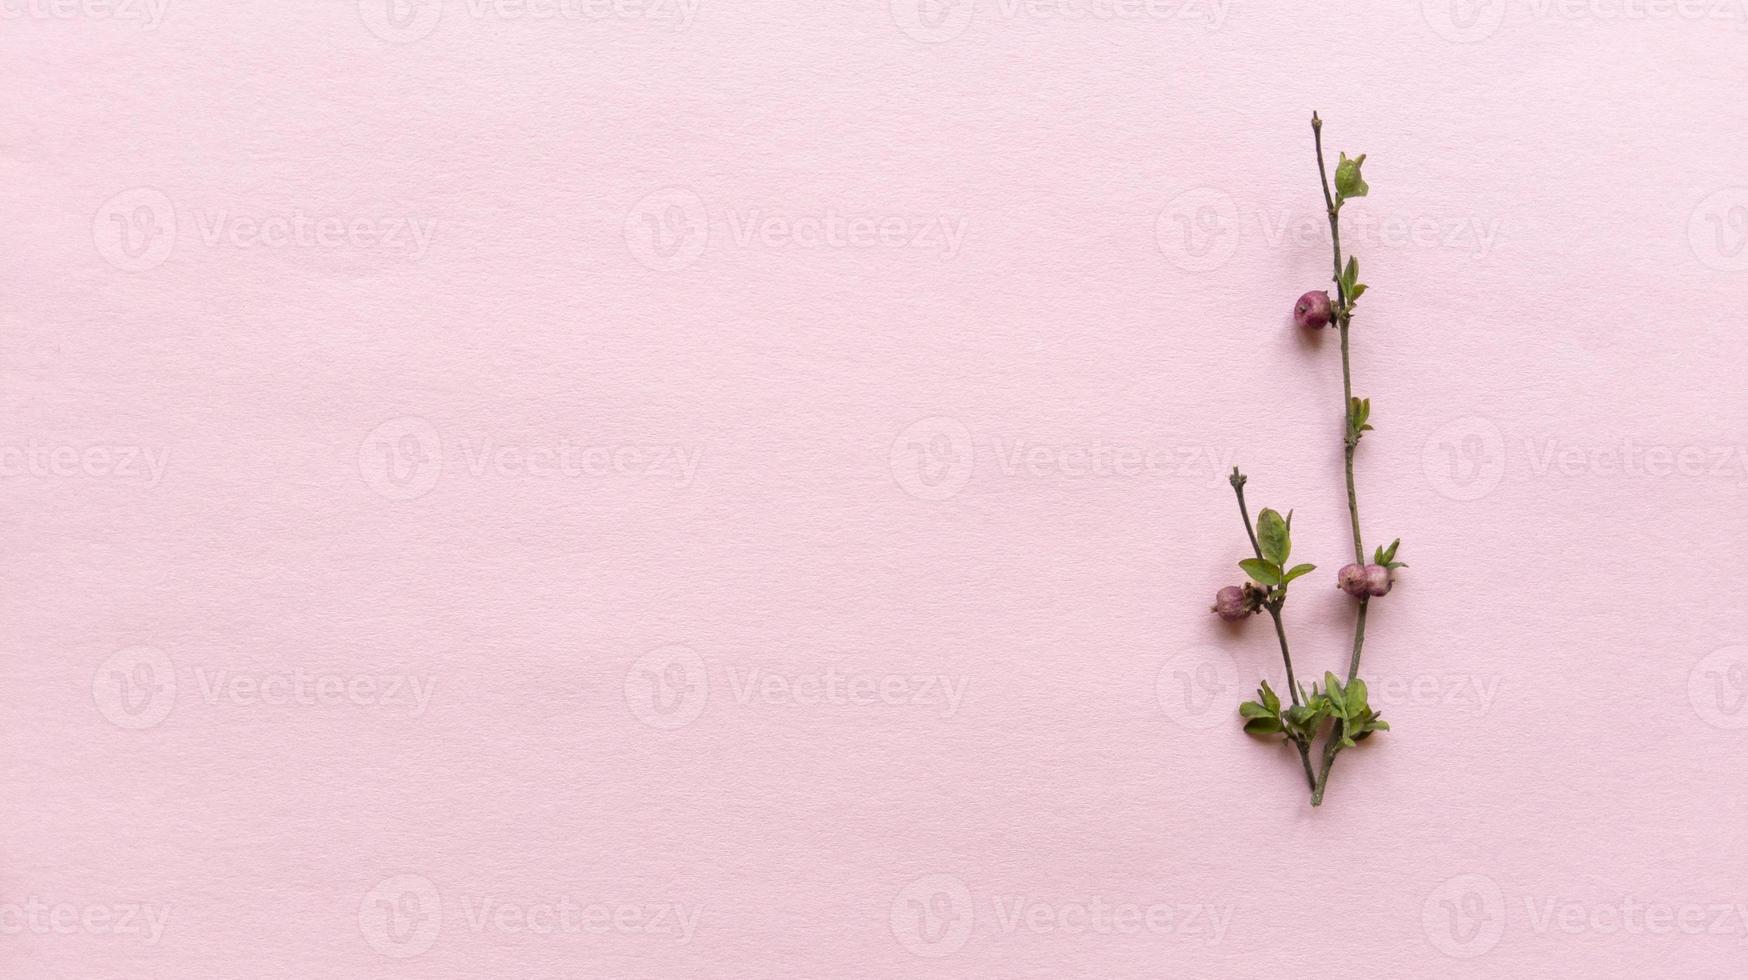 minimalistische takken met bladeren en bessen op een licht roze kleur achtergrond met pastel textuur eenvoudig plat leggen met kopie ruimte floral concept stock foto